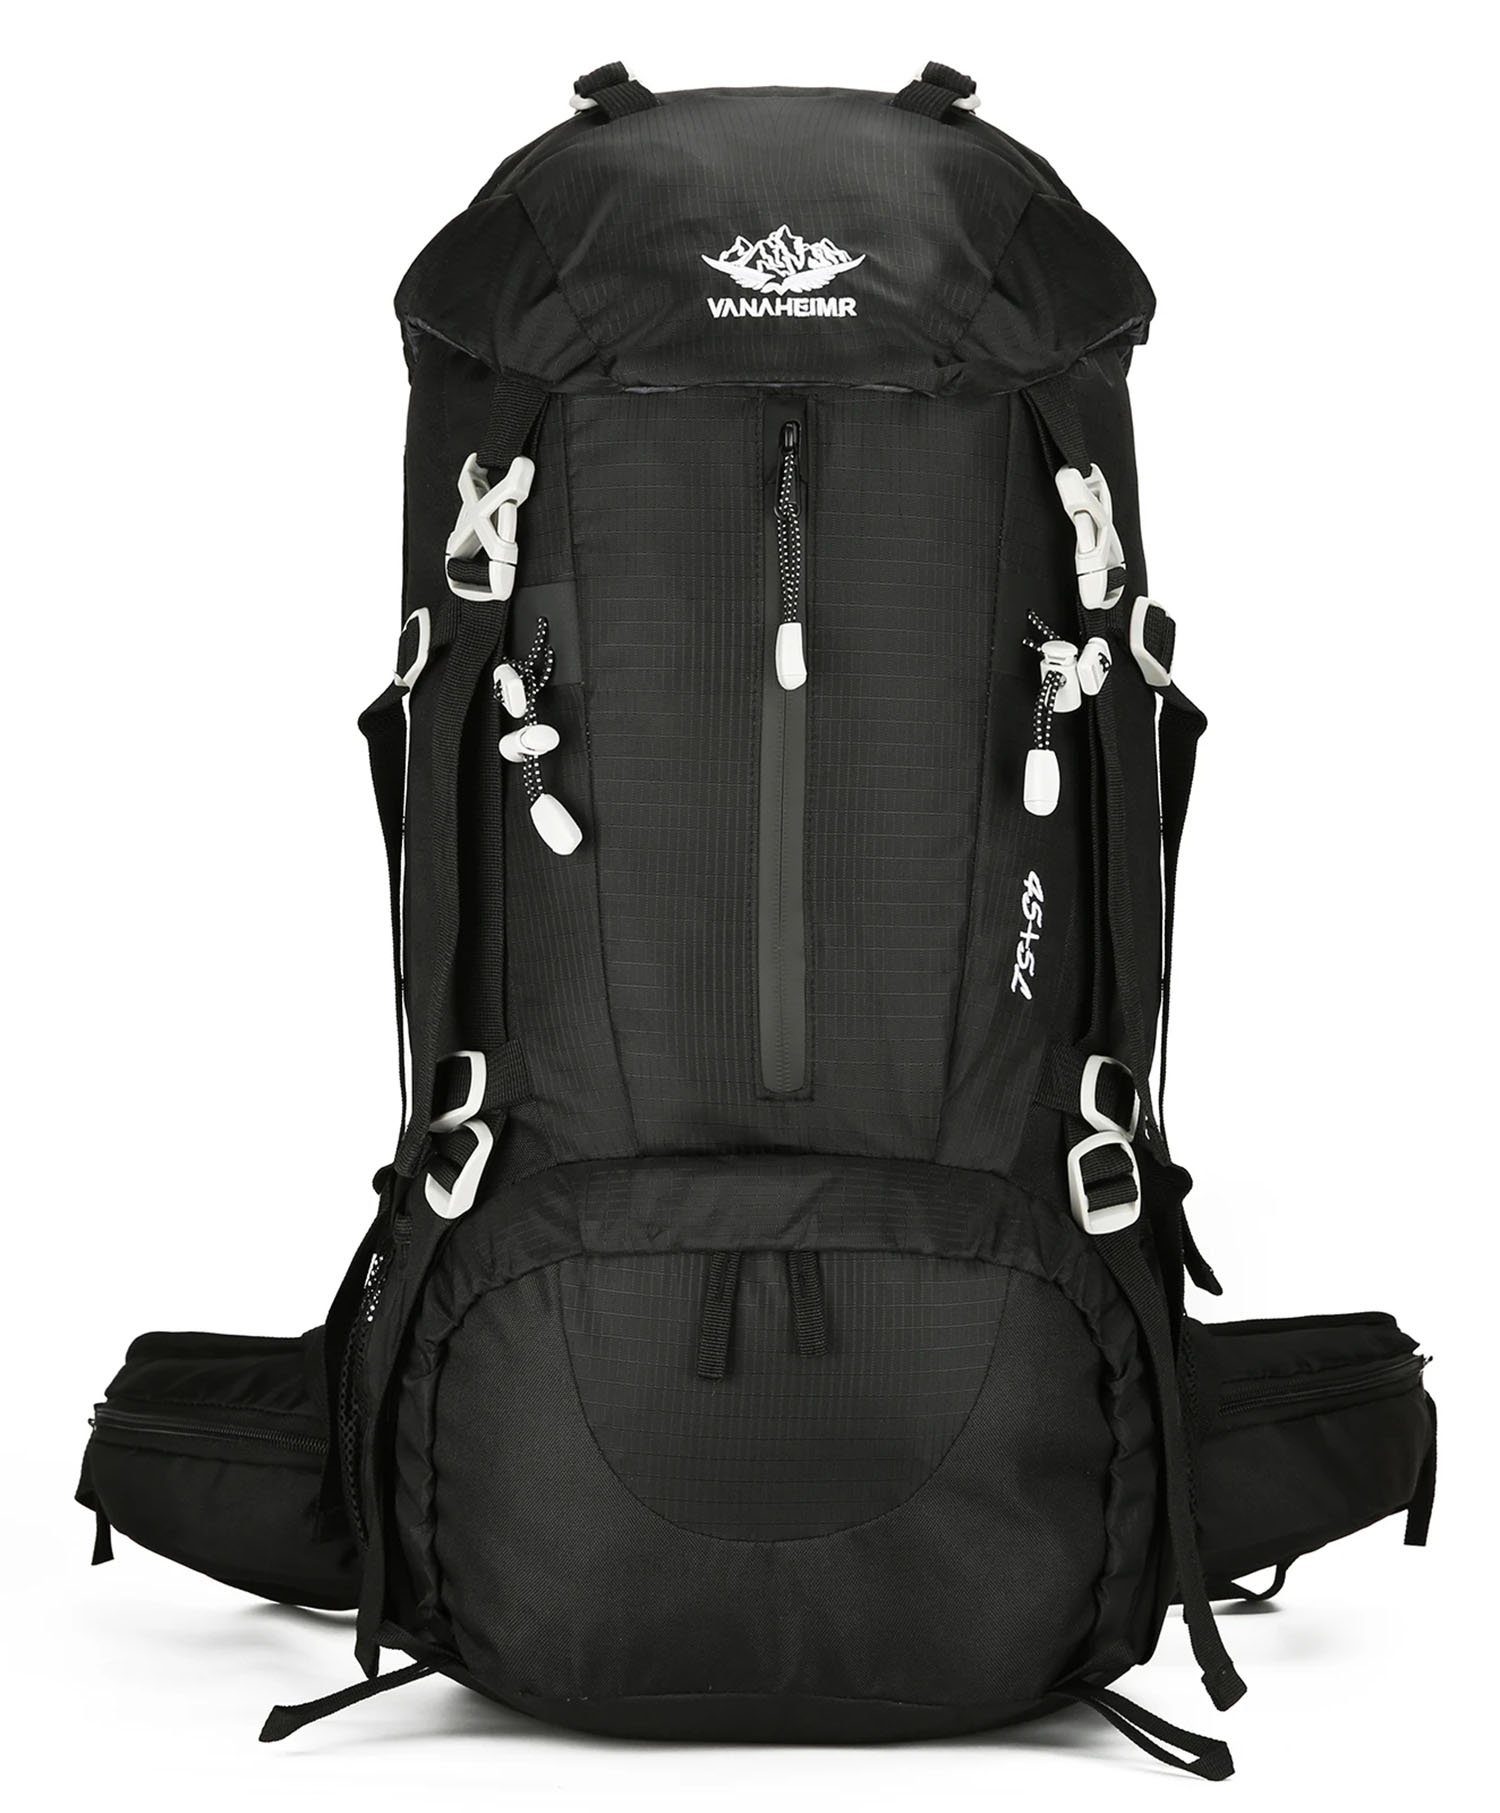 YYV Alpinrucksack Bergsteigertasche mit großem Fassungsvermögen, Ideal für Camping, Wandern, Trekking und mehr.